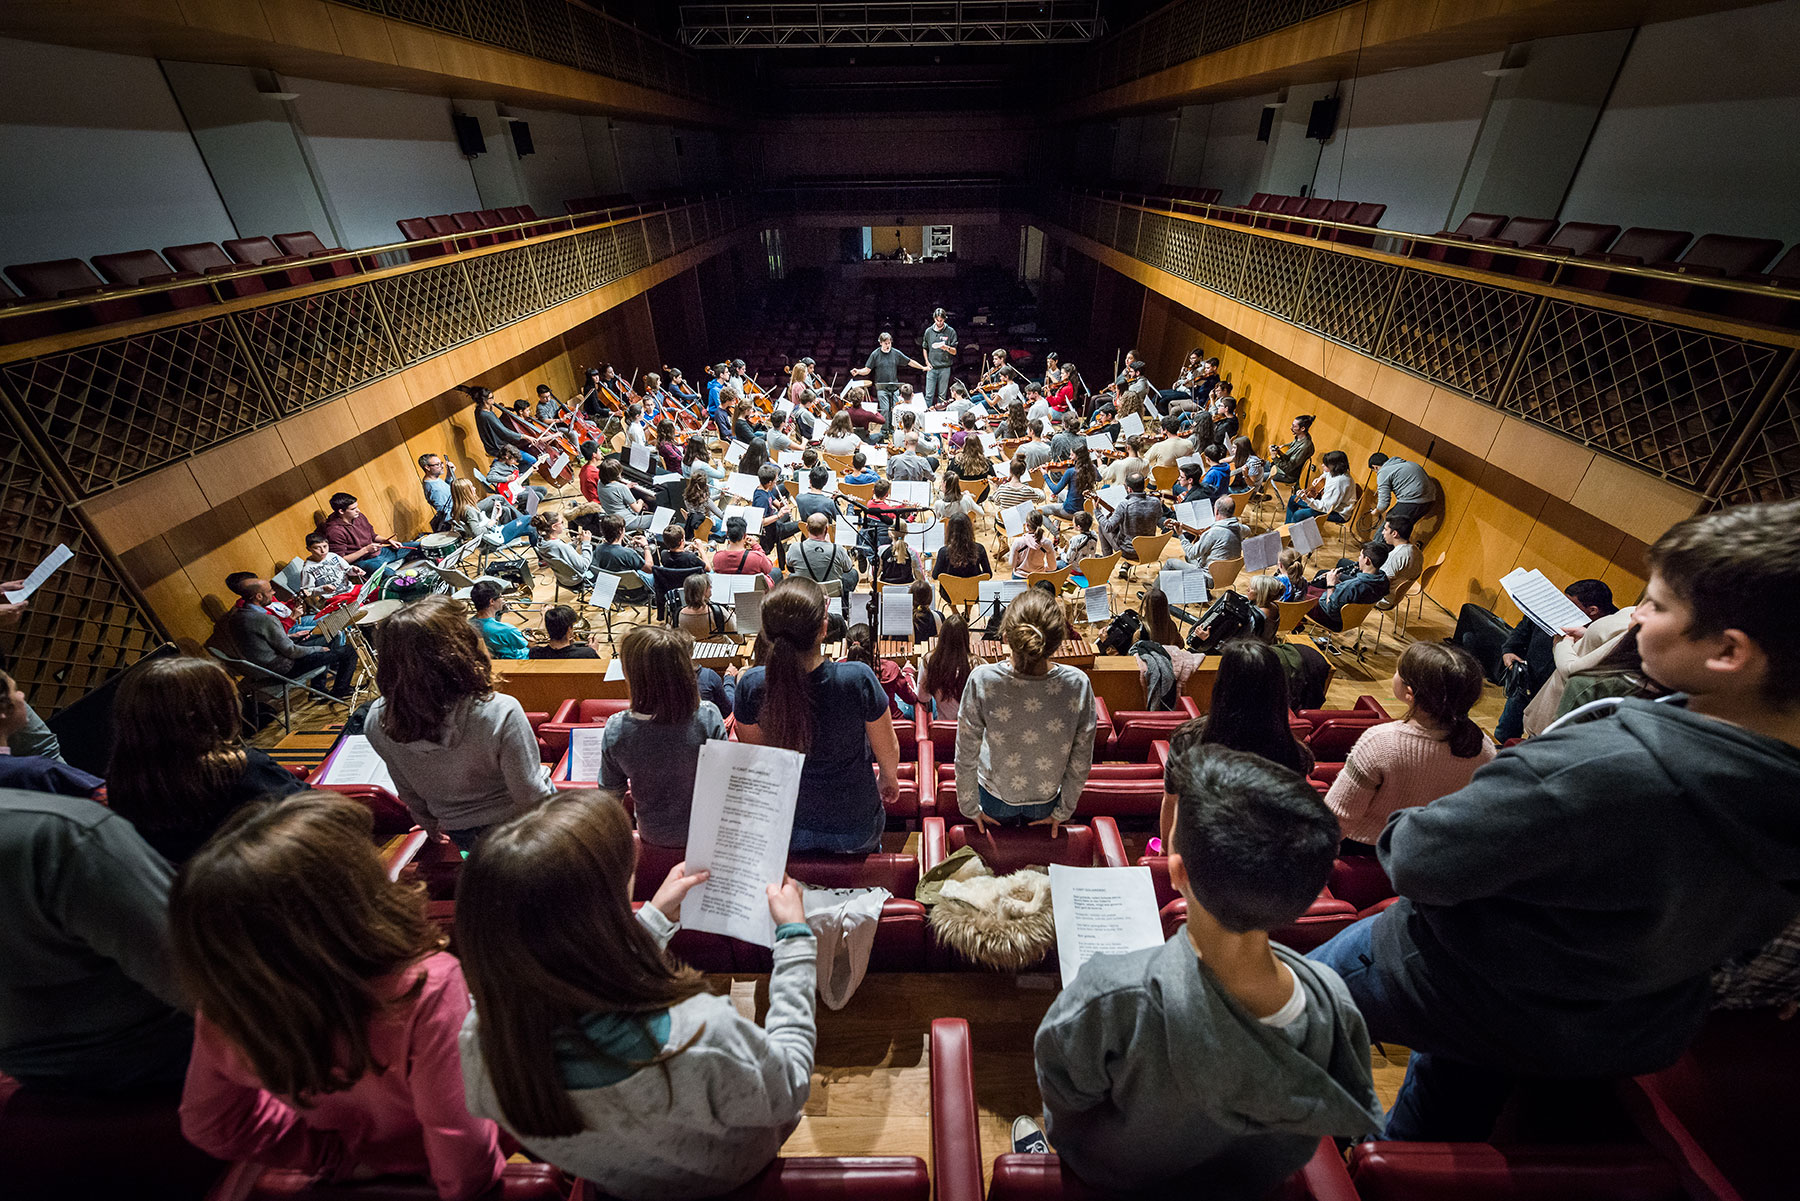 La Fundació ONCA posa a la venda les entrades del Concert de Santa Cecília